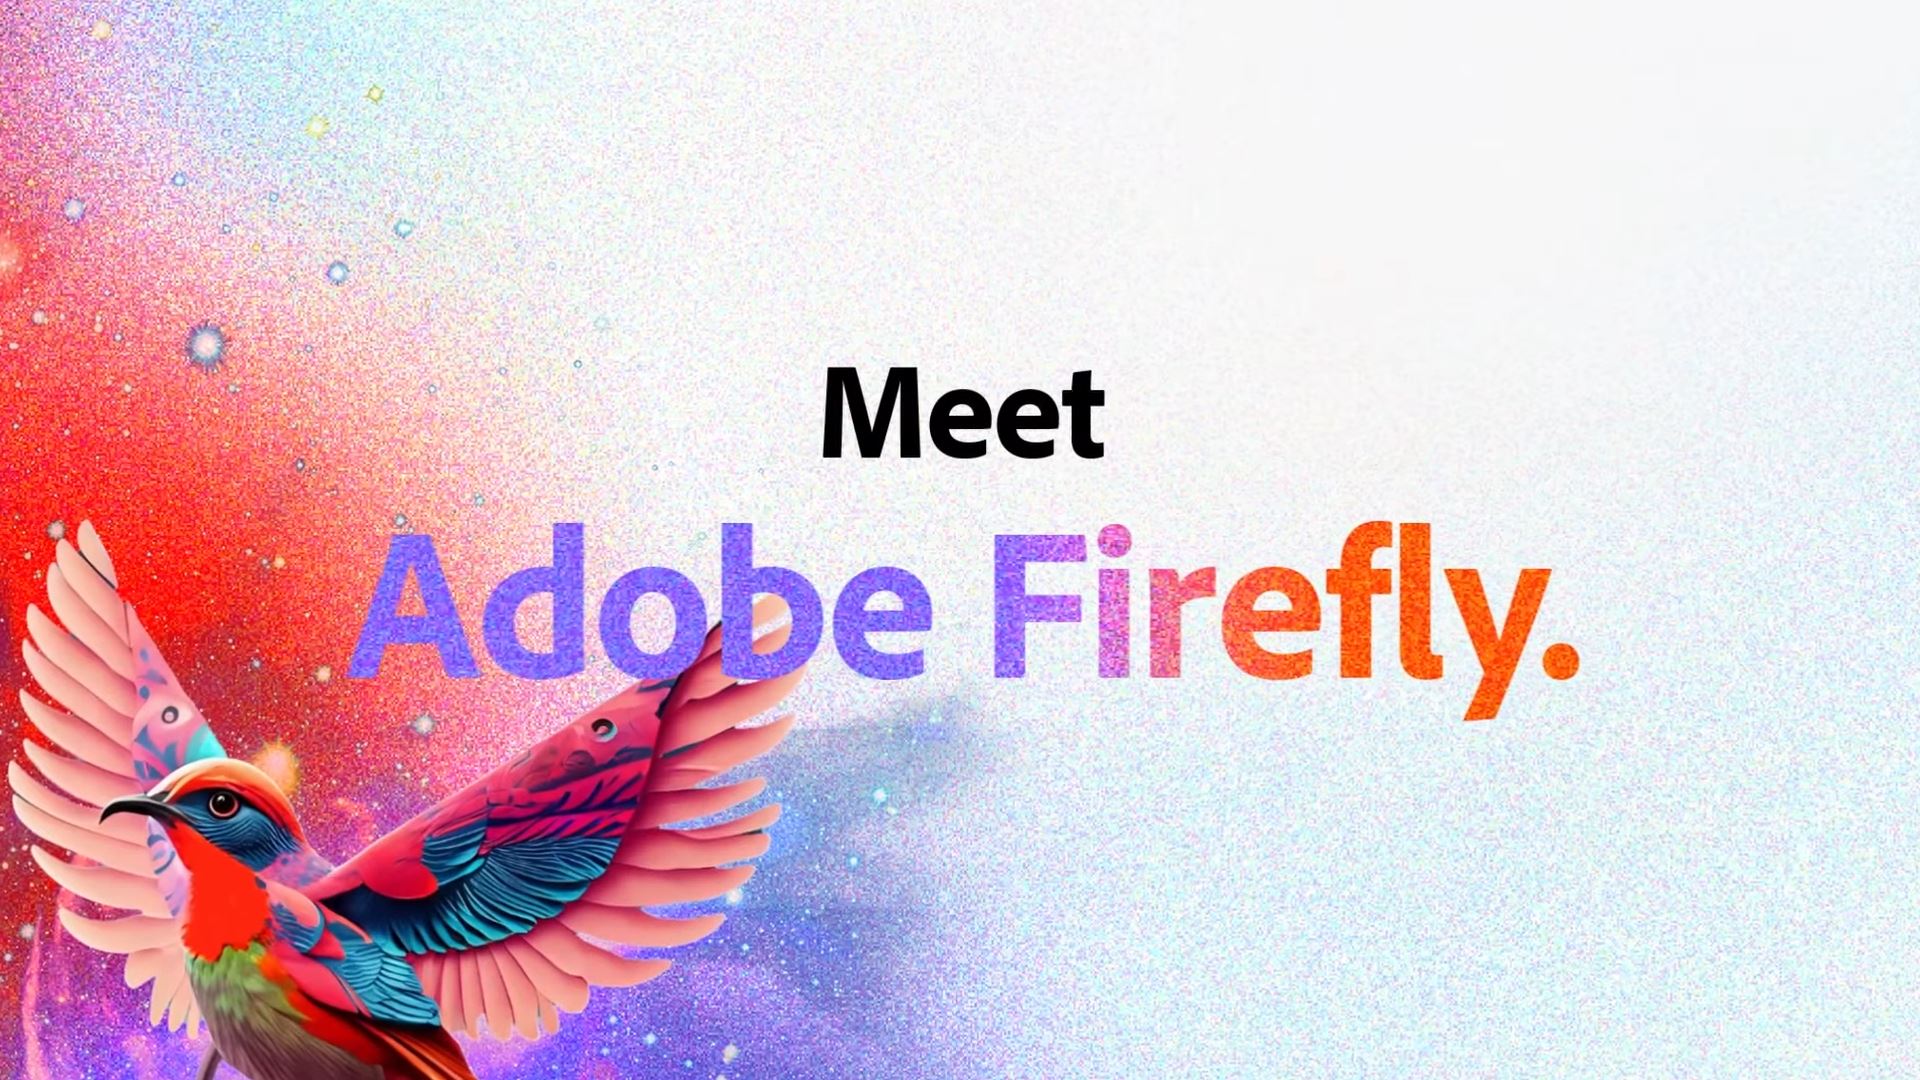 เปิดตัว ‘Adobe Firefly’ AI วาดภาพที่มีลูกเล่นมากกว่า Midjourney และ DALL-E!